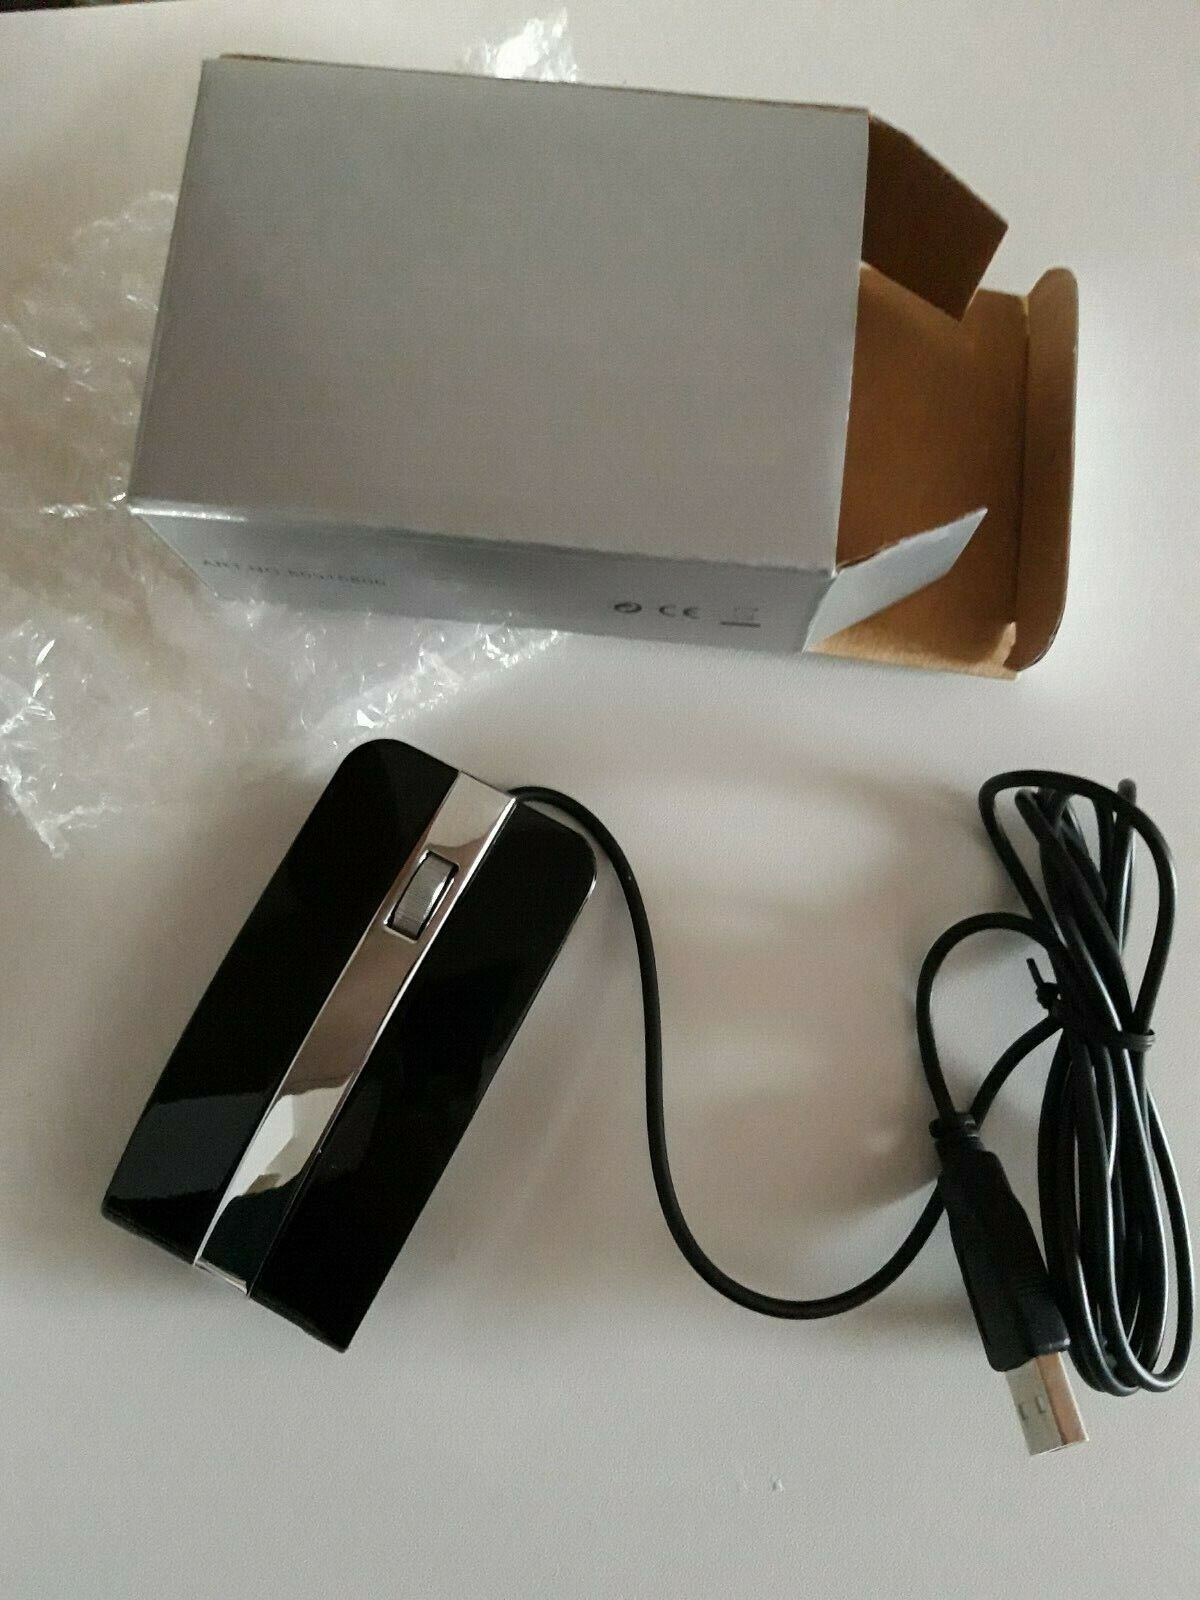 PC-Maus mit USB - Ca. 9 cm Lnge,  schwarz/silber